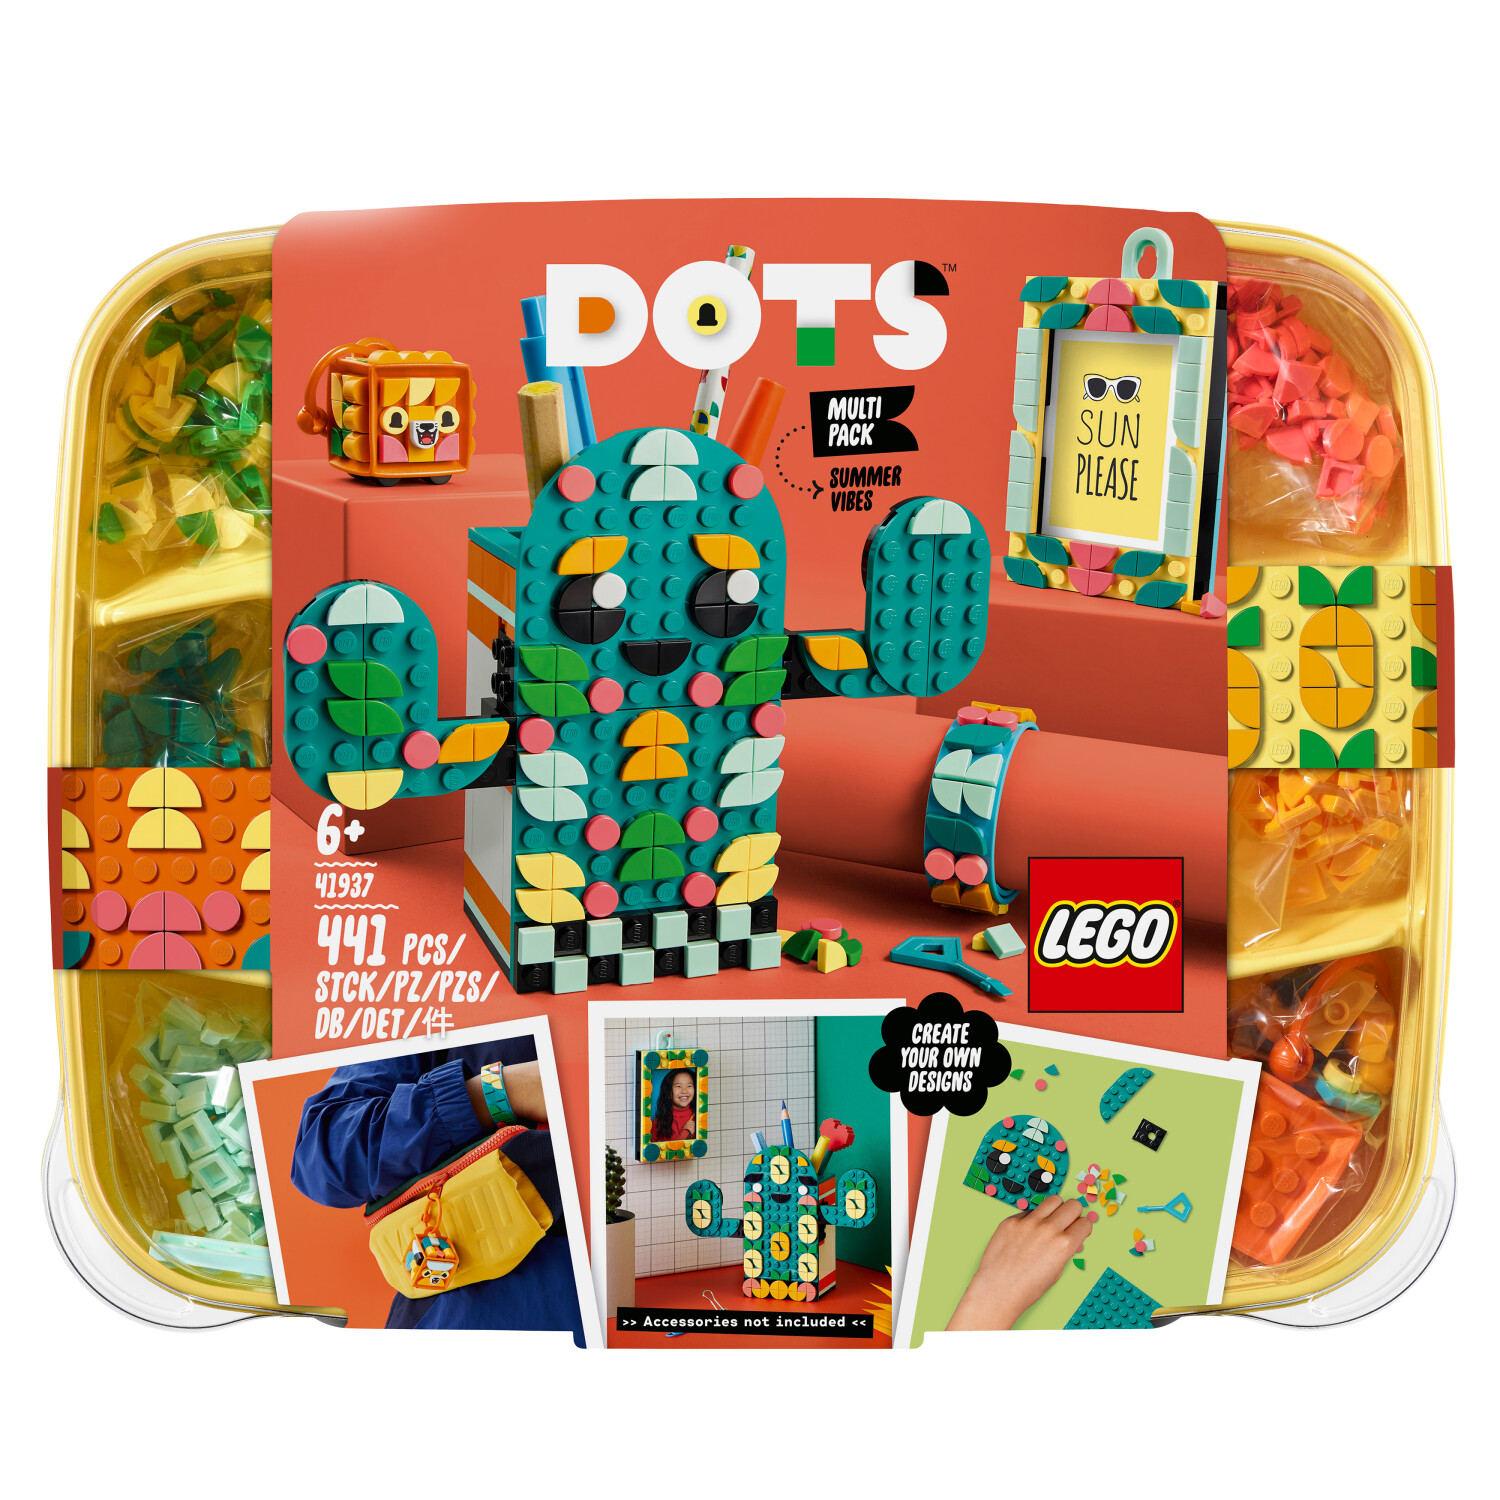 LEGO Dots - Kreativset Sommerspaß bei ab 15,00 € (41937) | Preisvergleich